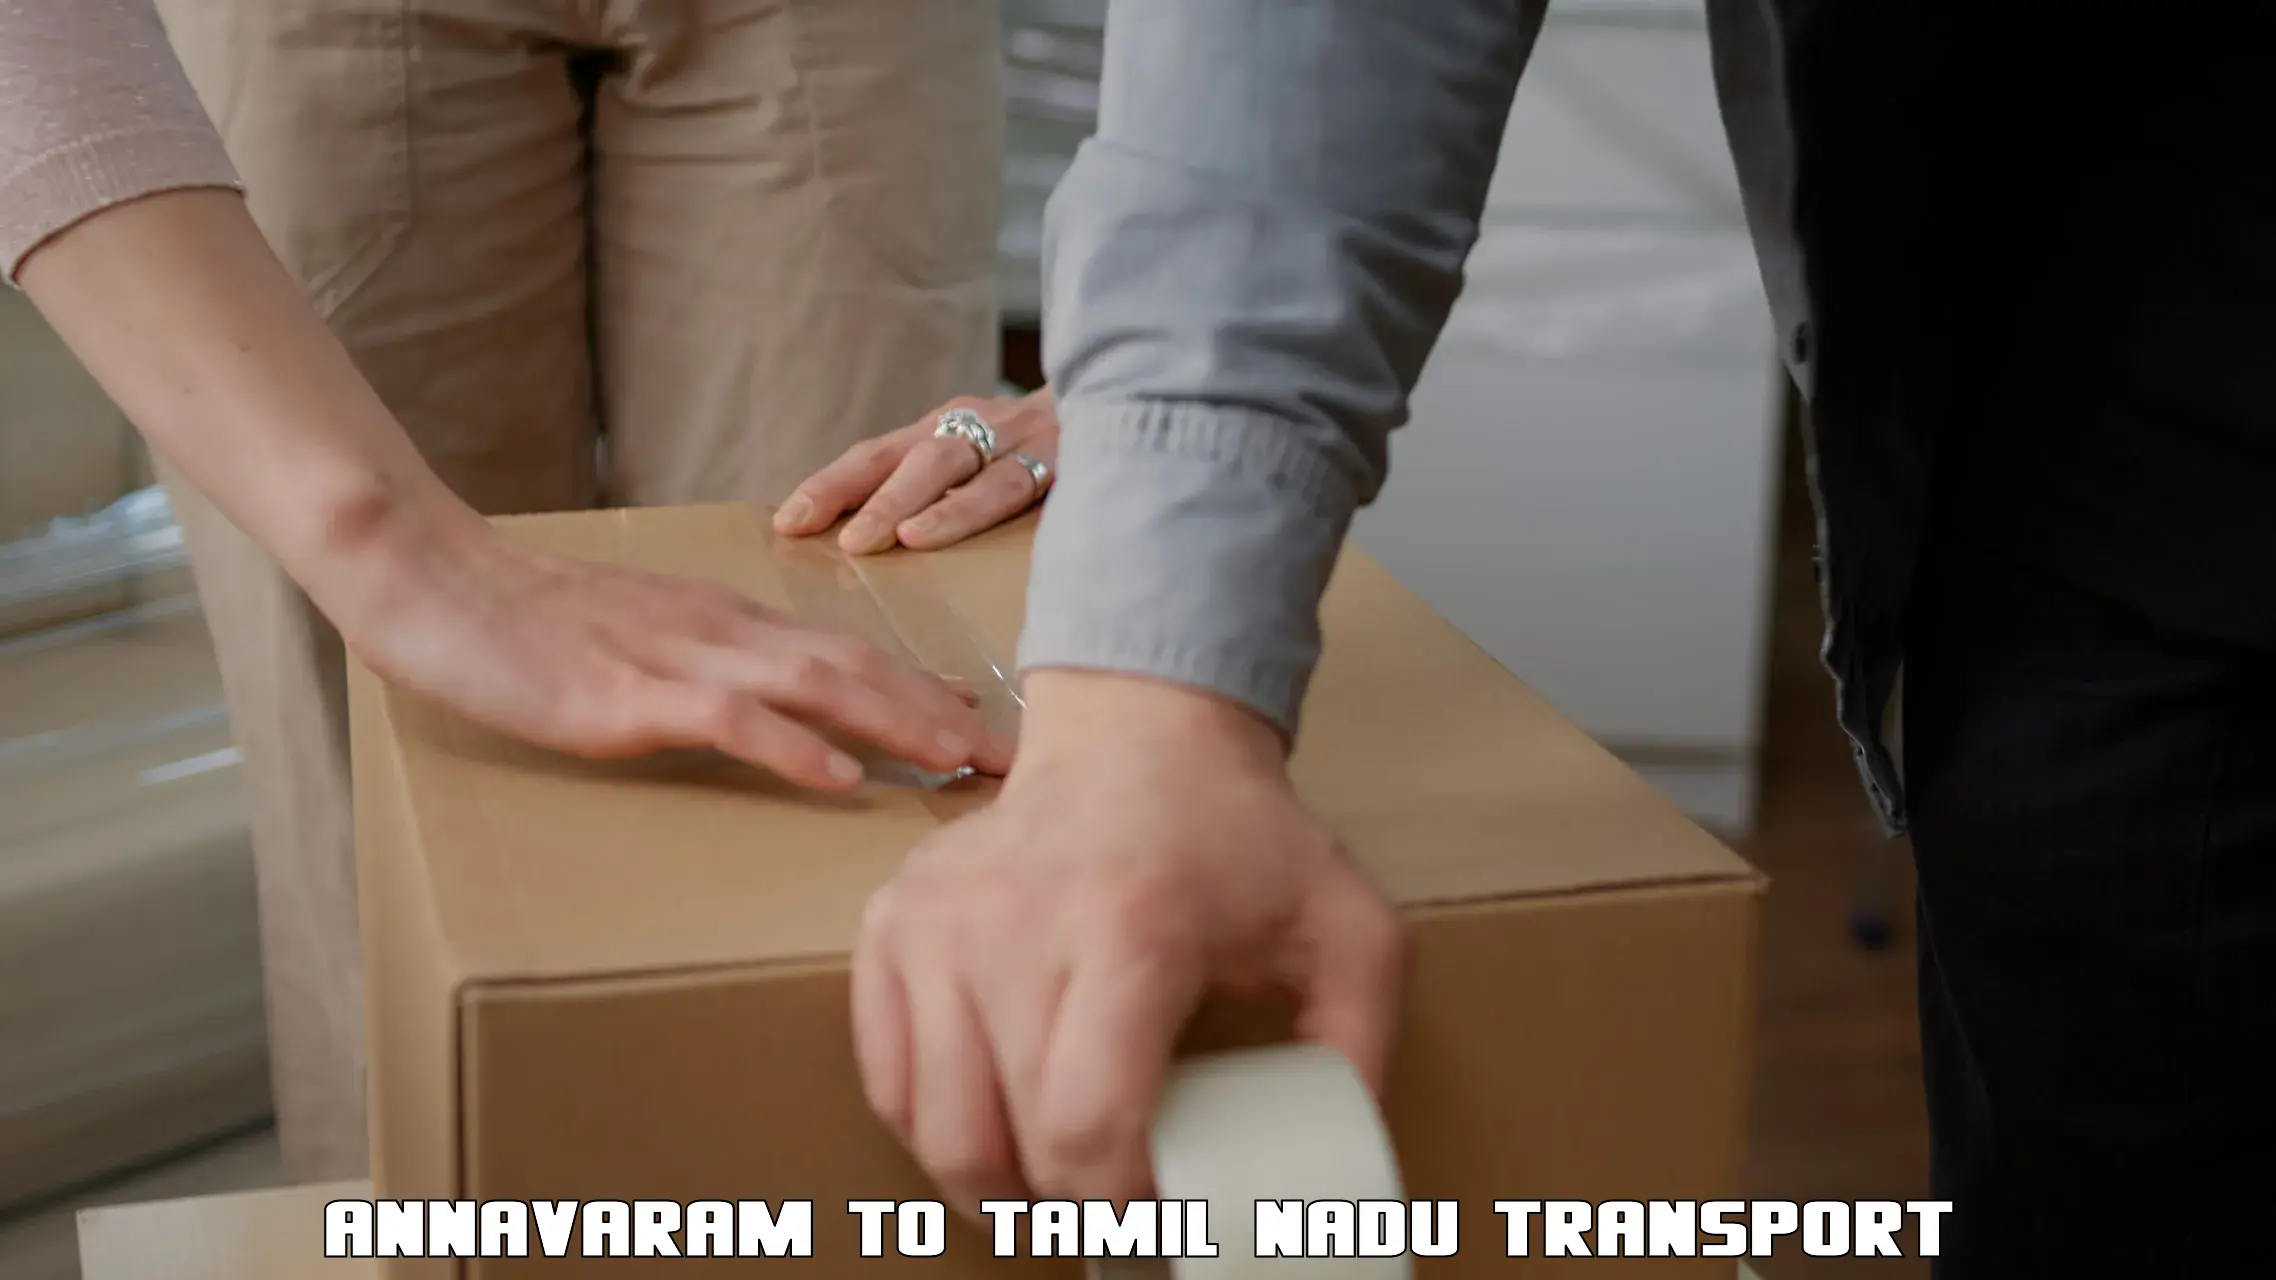 Daily transport service Annavaram to Tamil Nadu